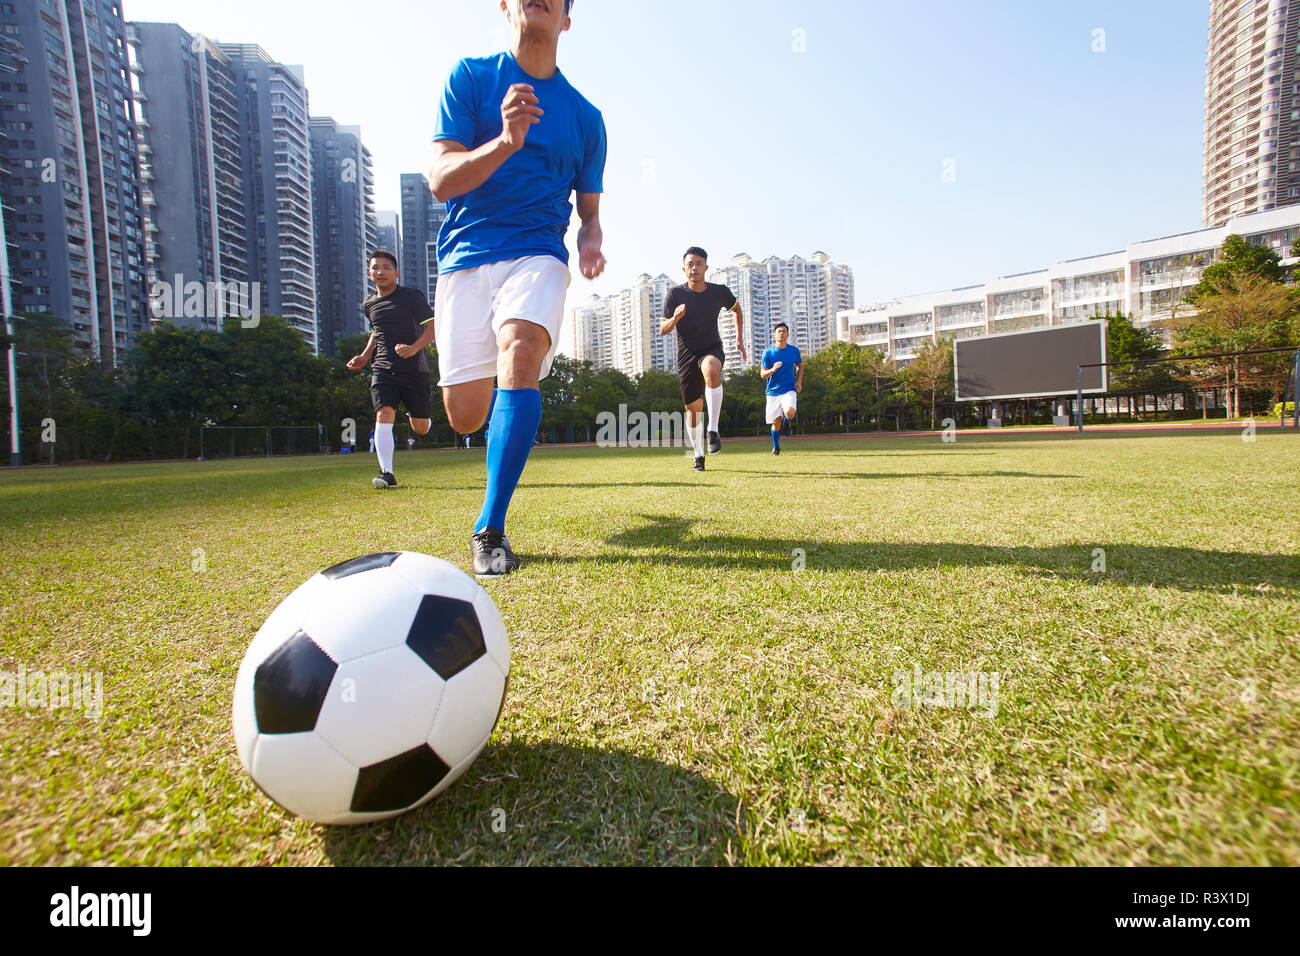 Los jóvenes jugadores de fútbol asiático persiguiendo el balón durante un partido Foto de stock